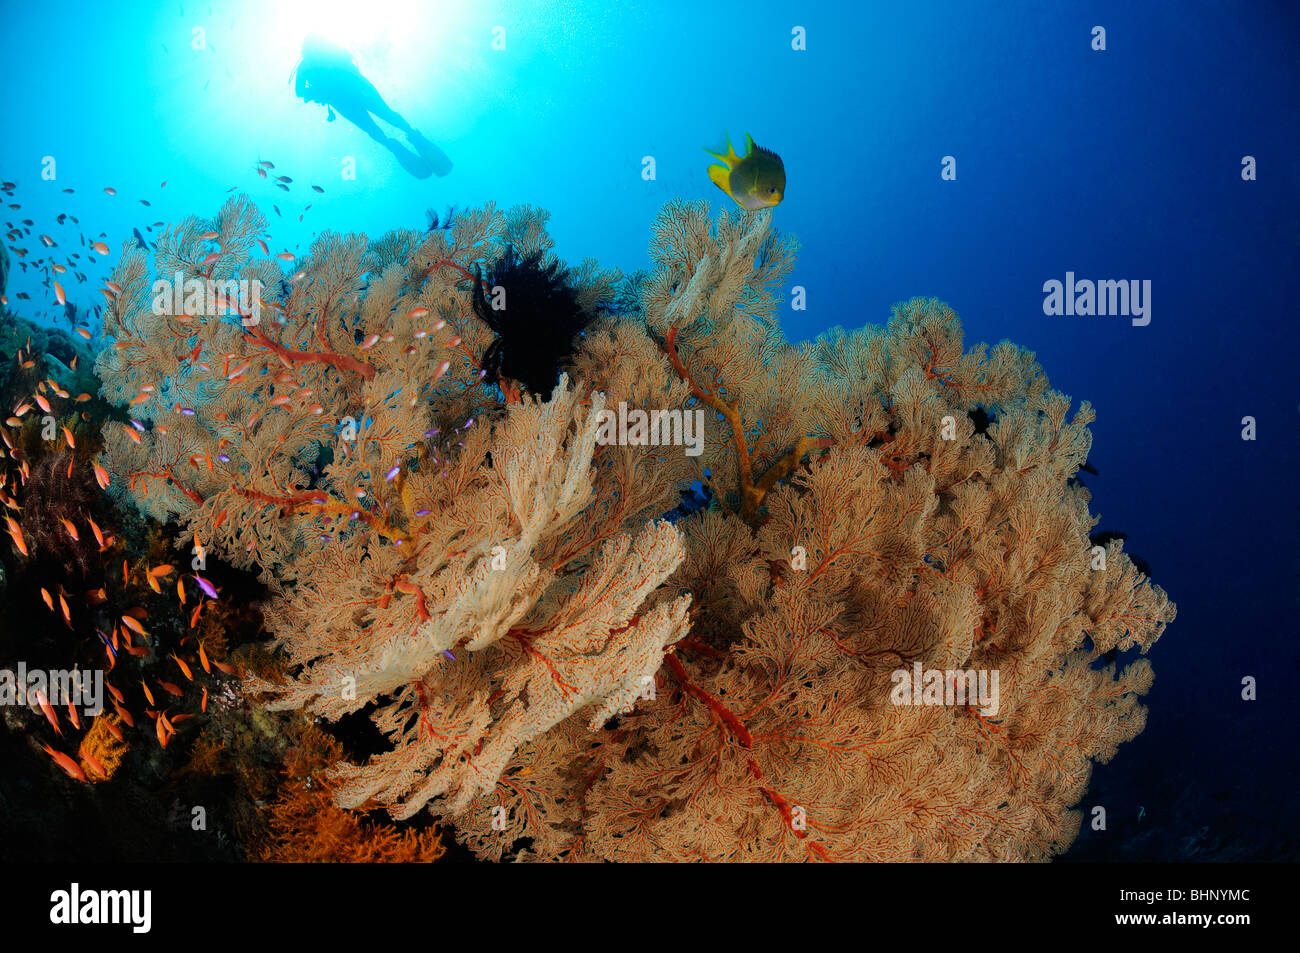 Annella mollis, Subergorgia hicksoni, scuba diver sulla colorata barriera corallina con ventilatore gigante di gorgonie, Amed, Bali Foto Stock